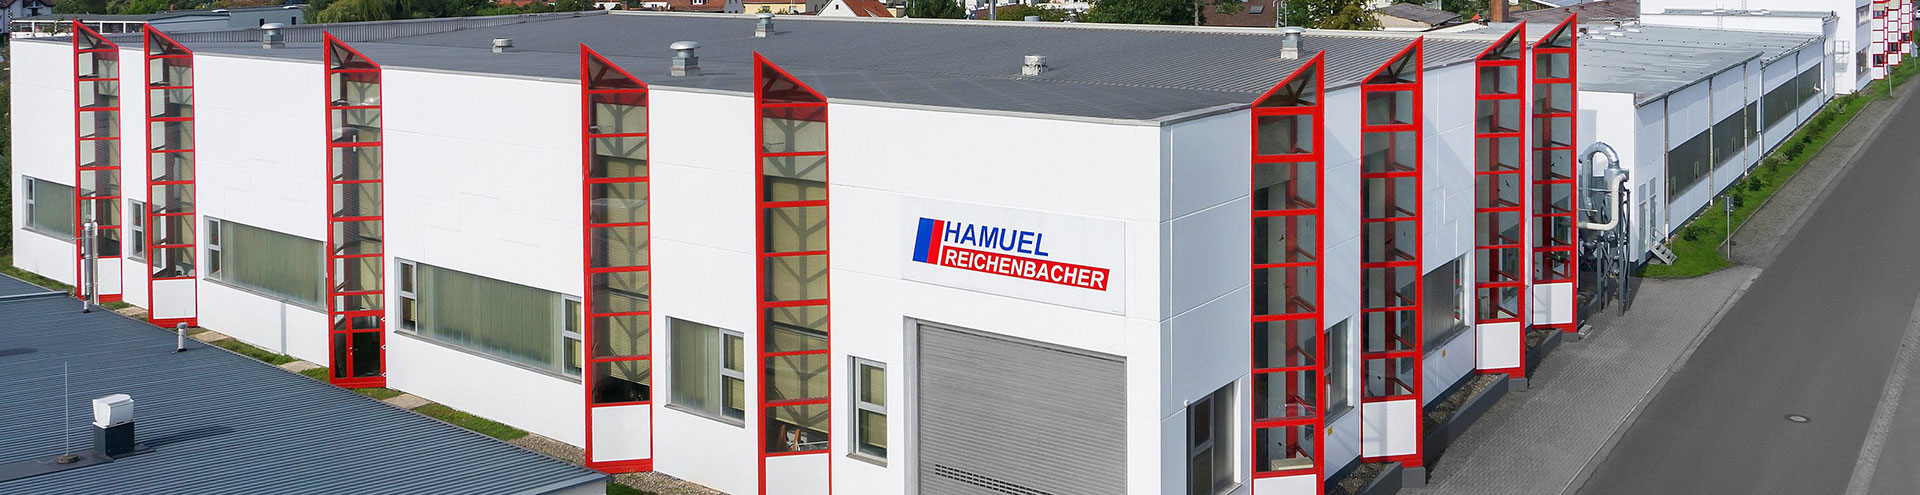 Reichenbacher Hamuel GmbH